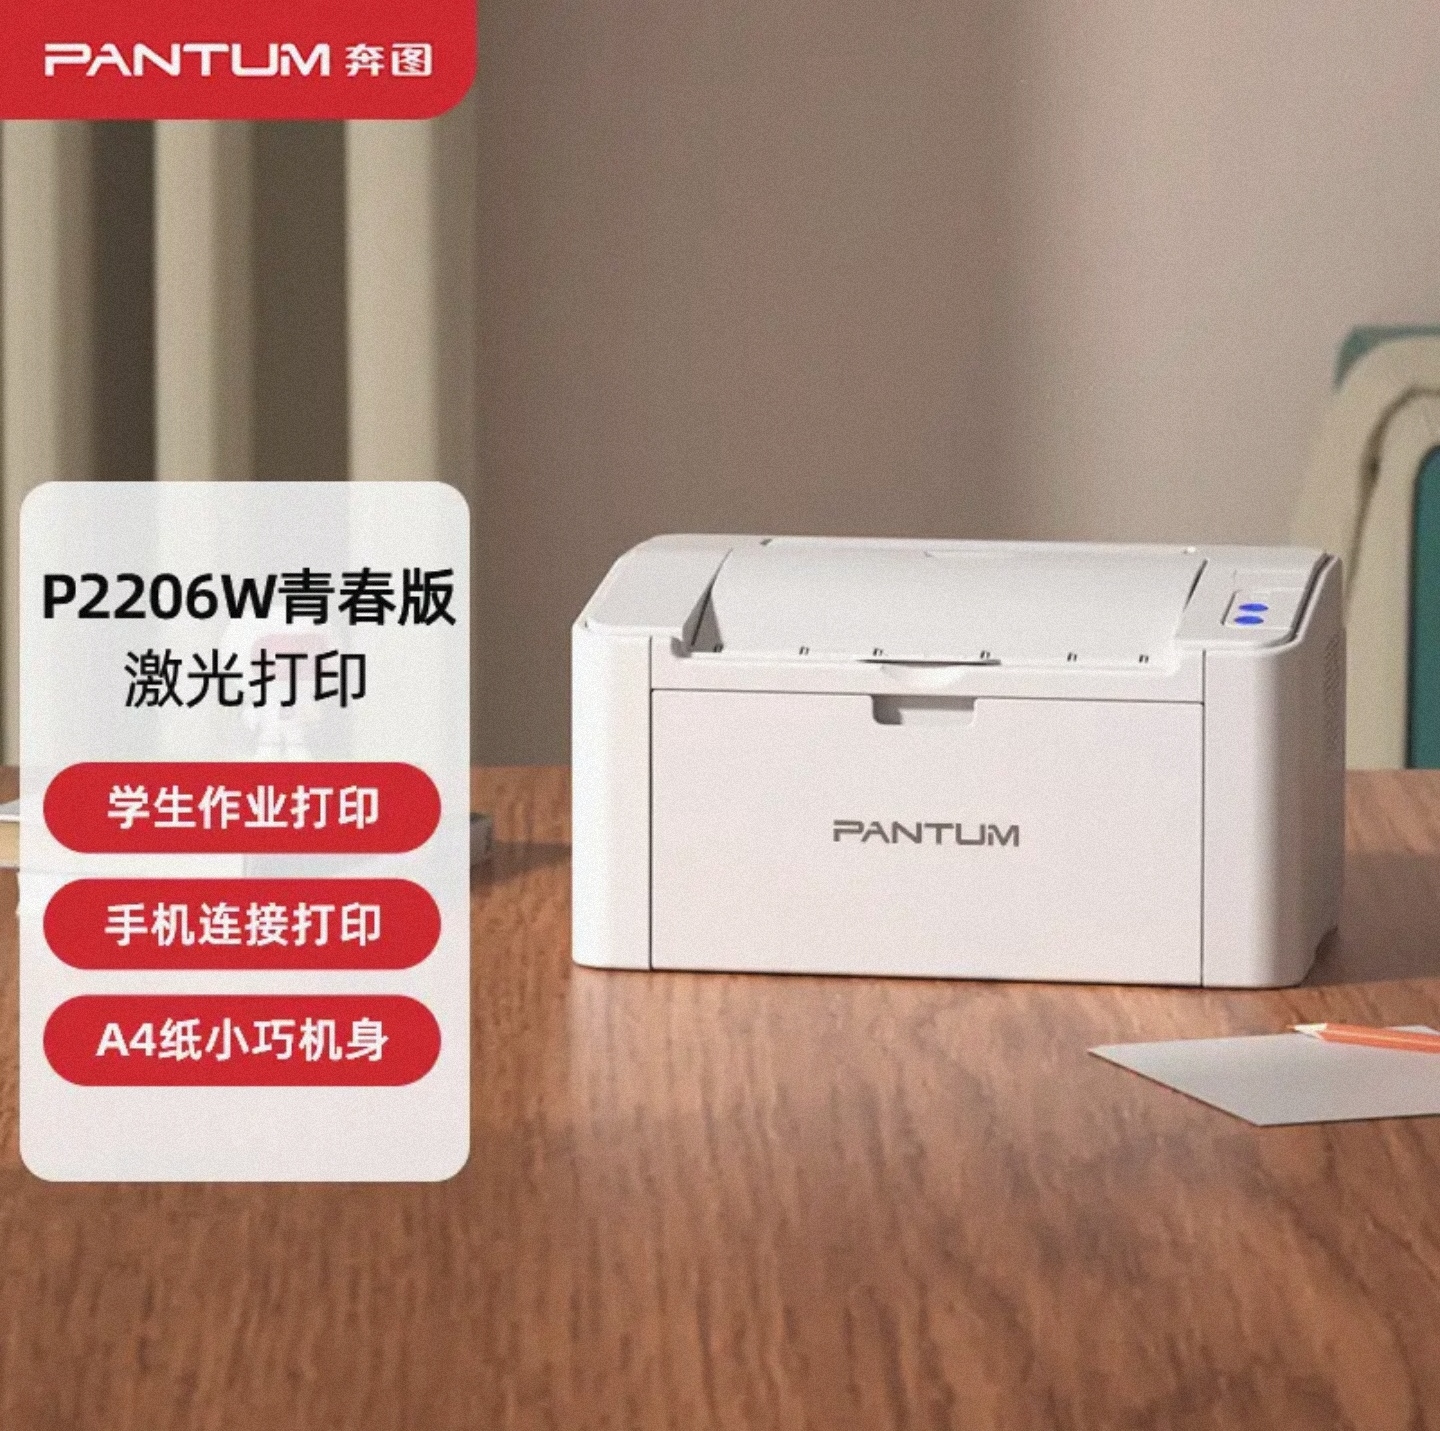 奔图P2206W 微信分享/WiFi打印 黑白激光无线网络 家用作业打印机 - 图0